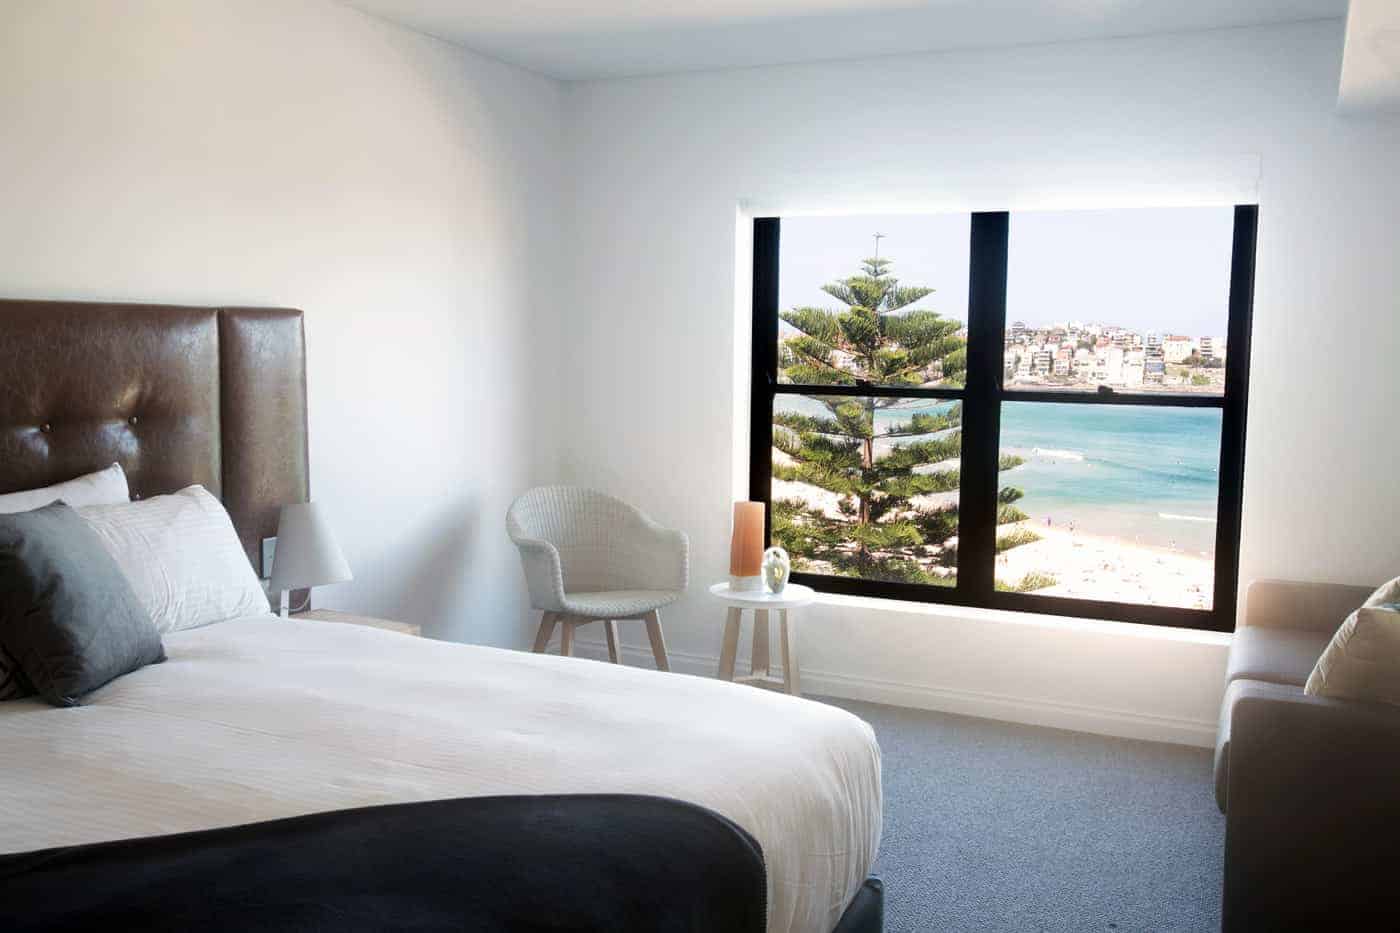 Bondi Beach Accommodation Sydney Bondi 38 Apartments